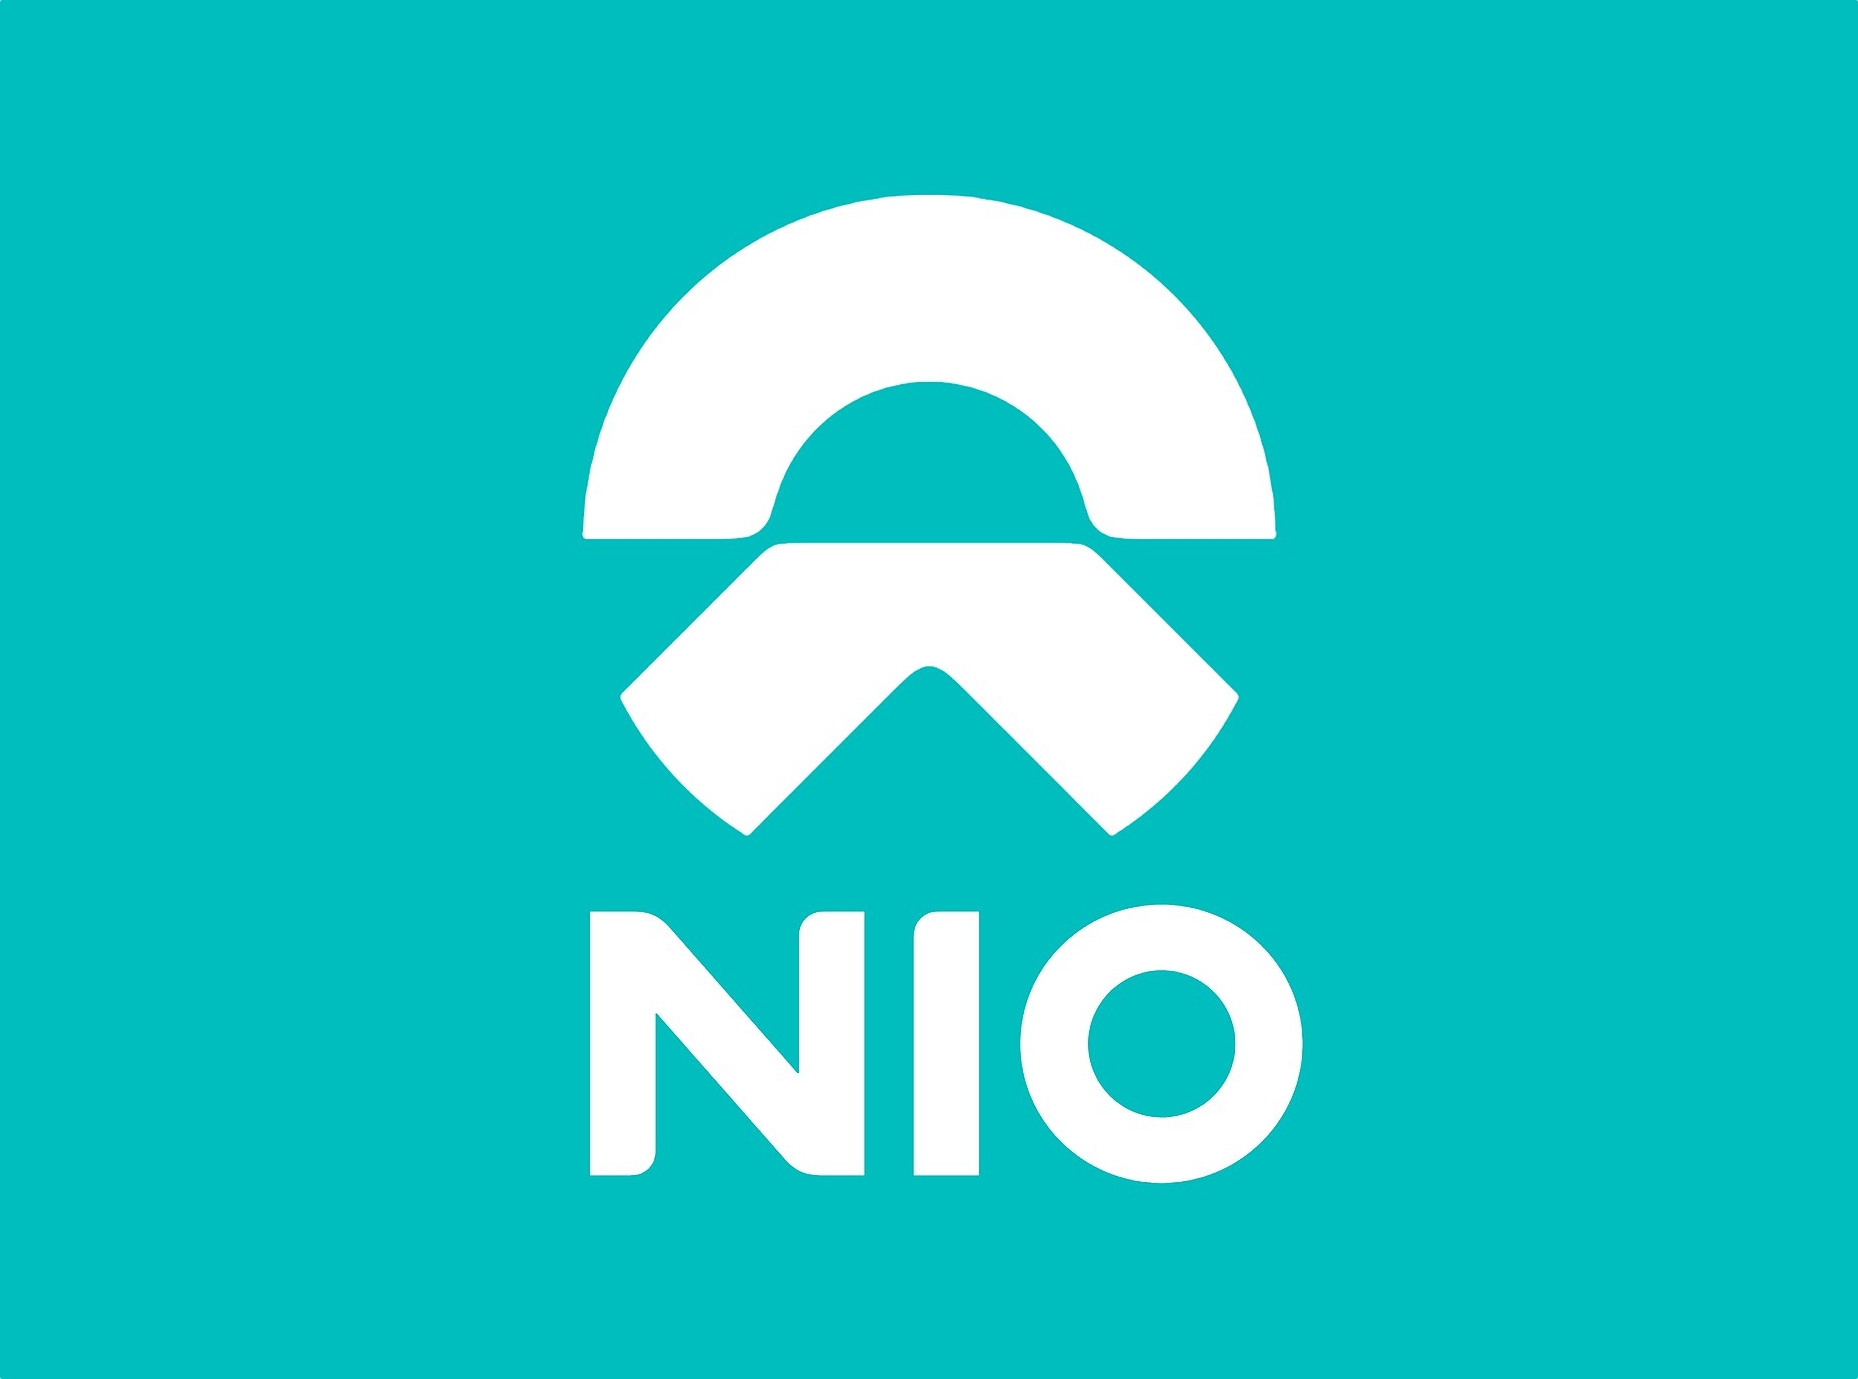 Китайський виробник електромобілів Nio почне випускати смартфони, перша новинка може вийти у 2023 році